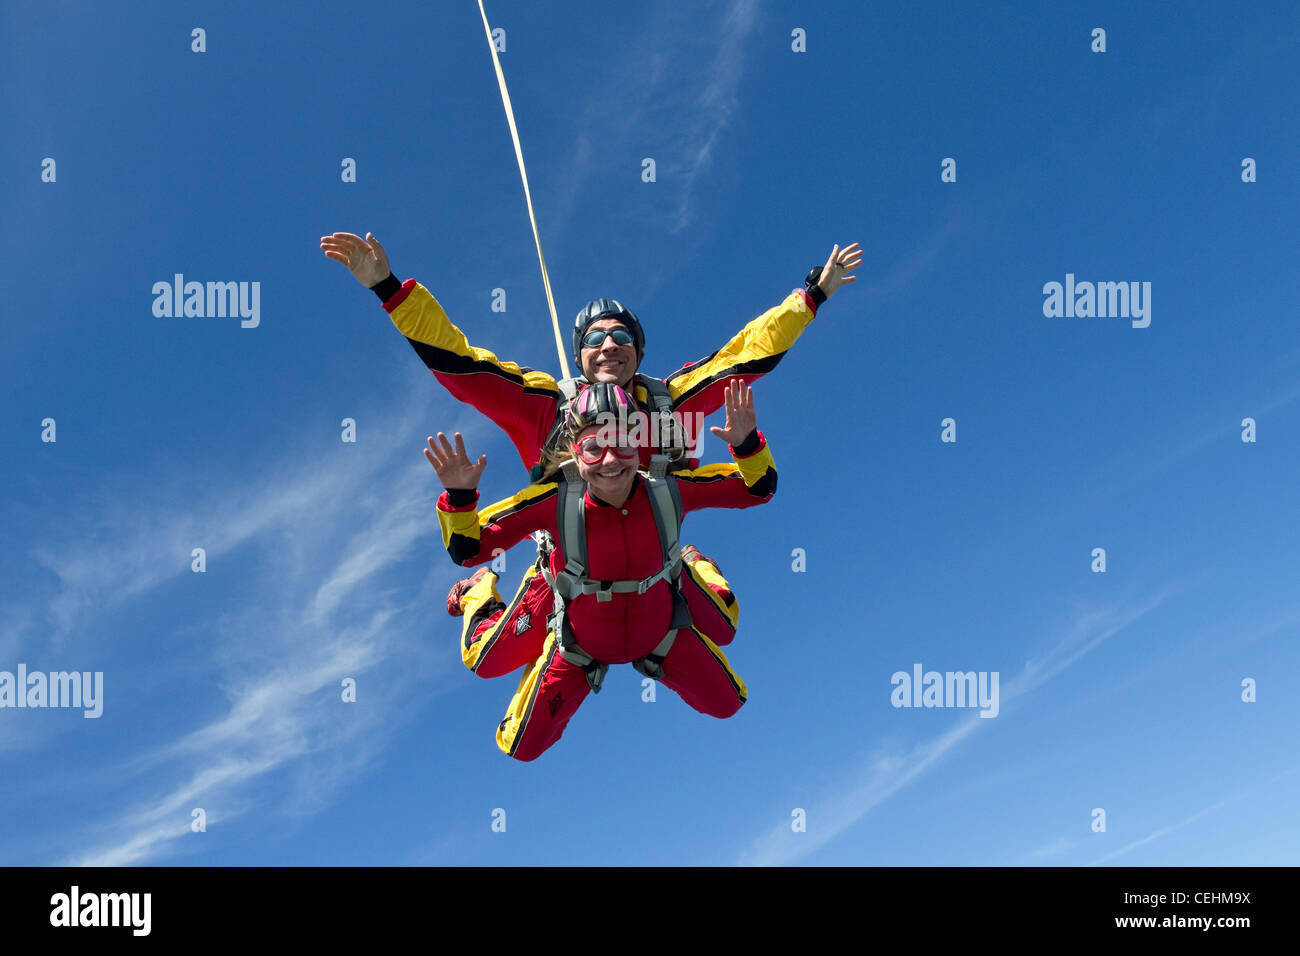 Skydivers Tandem giovane si divertono insieme nel blu del cielo. Grande per vedere il divertimento in questo rush sport d'avventura. Foto Stock